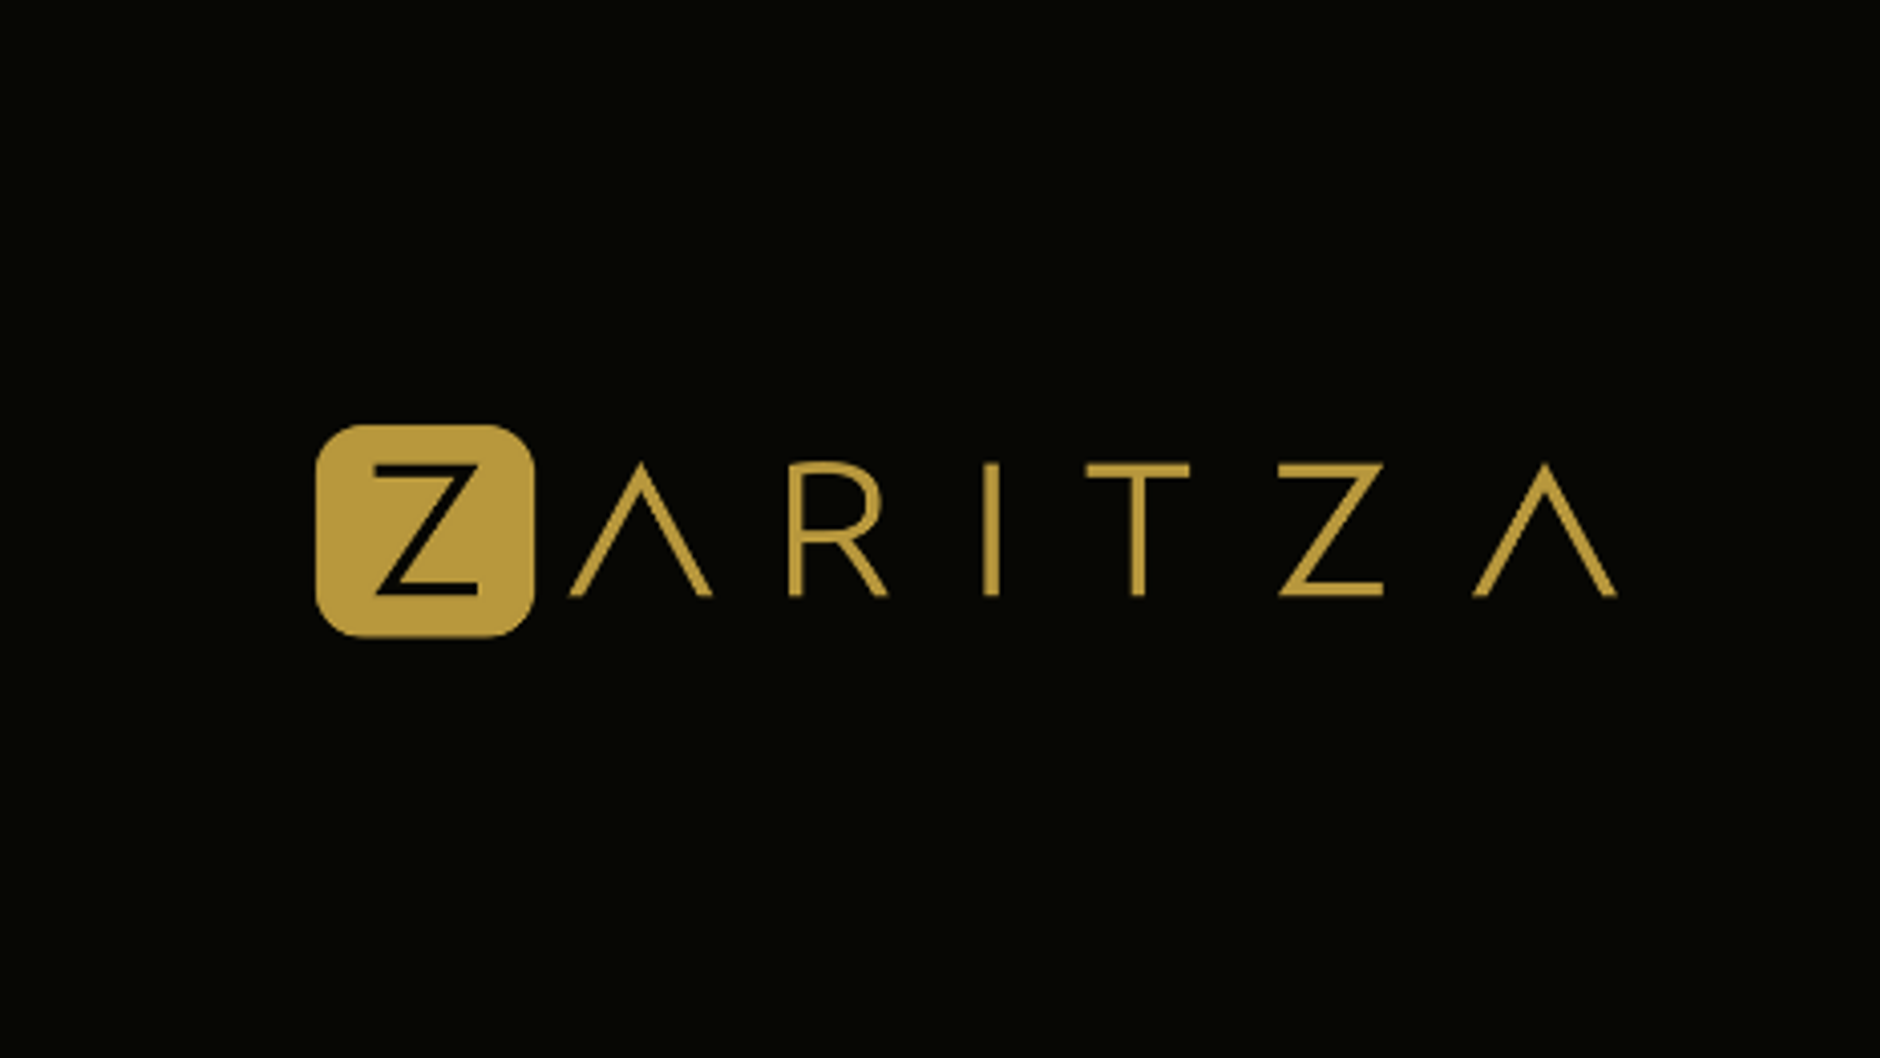 Zaritza Music Video